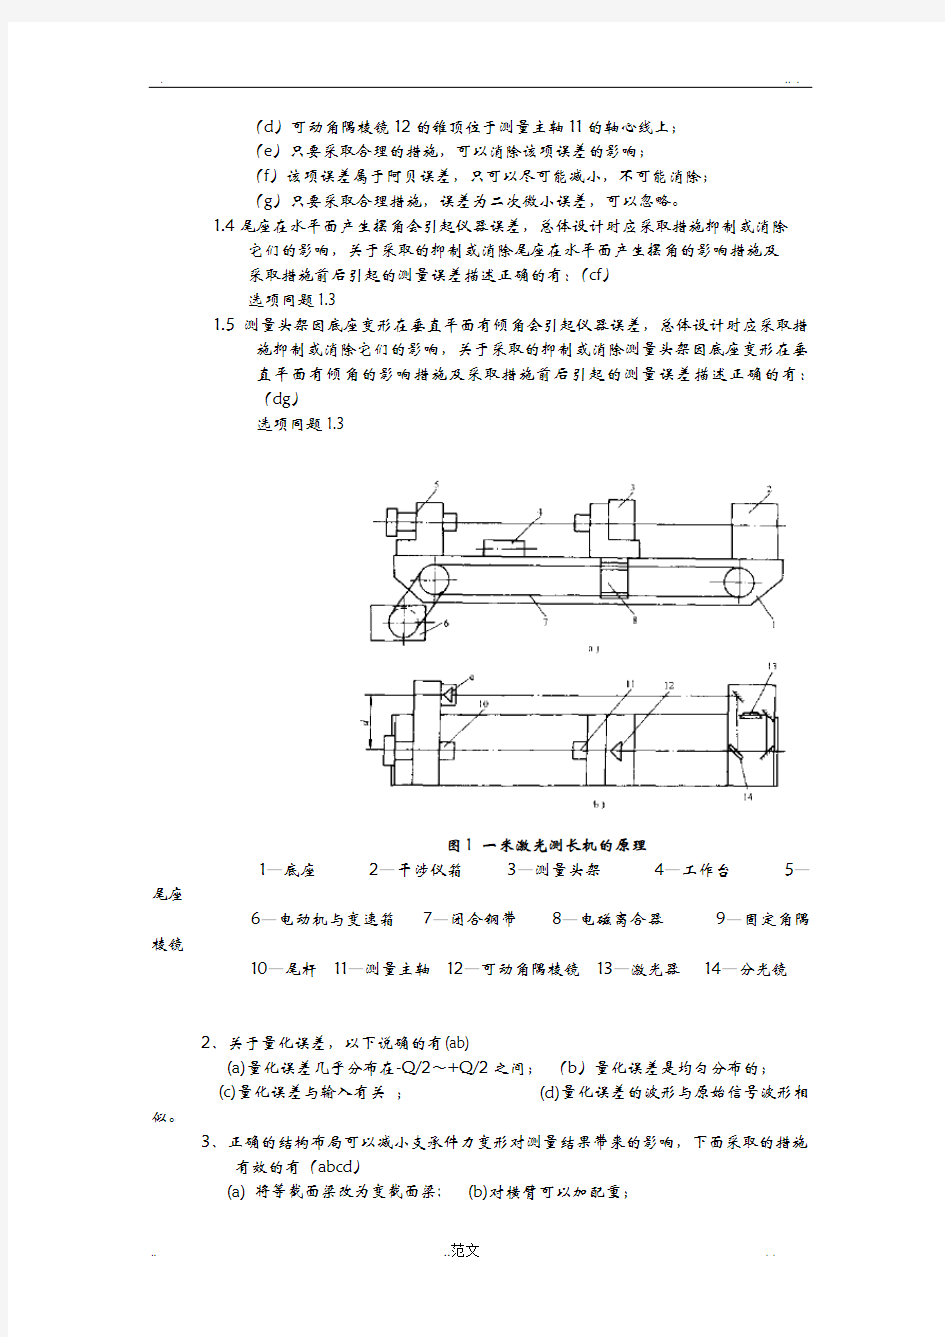 重庆大学测控仪器设计课程试卷